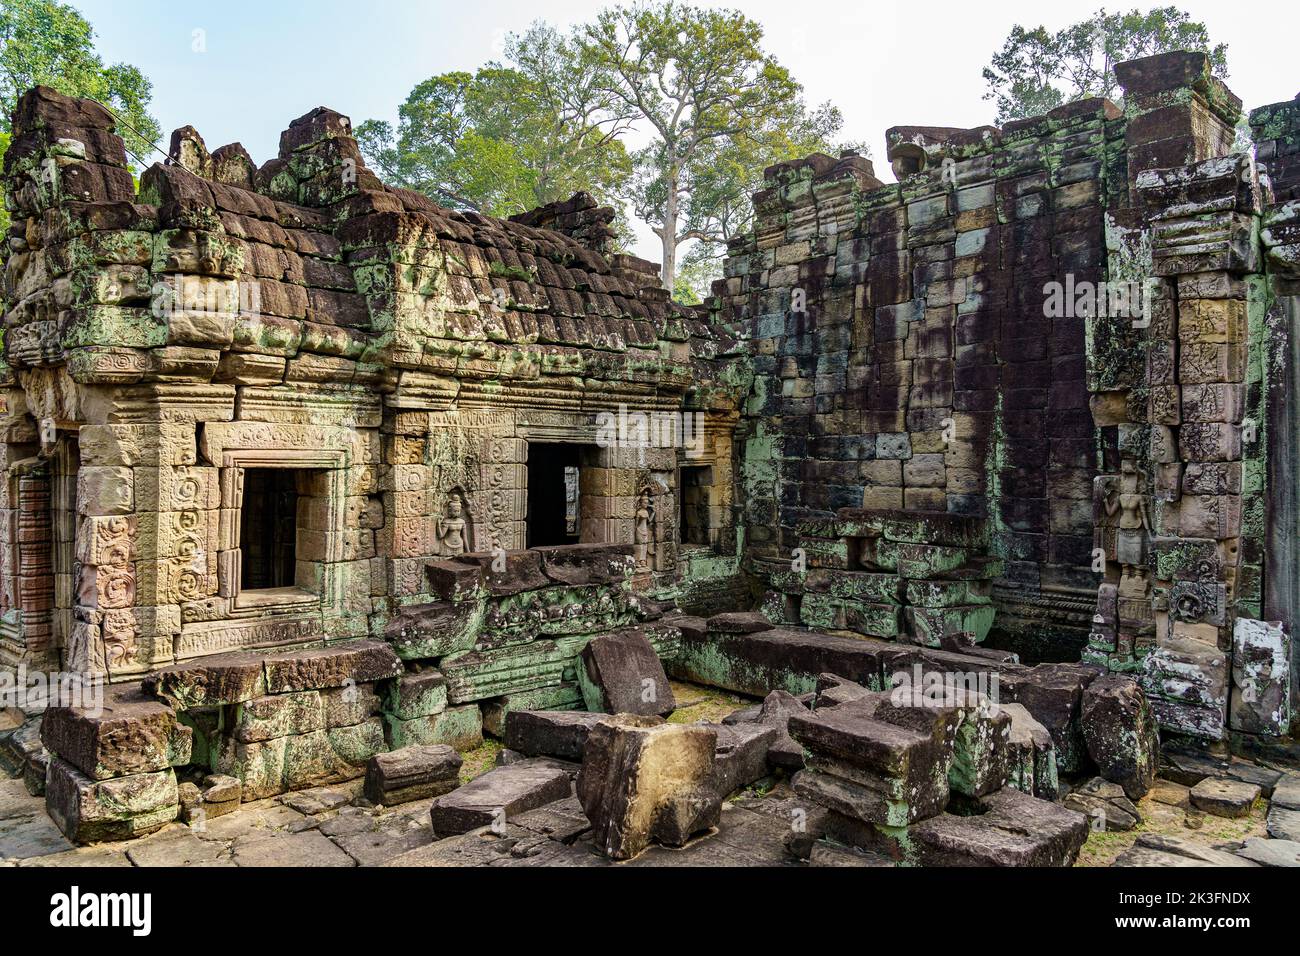 Camboya. Siem Riep. El parque arqueológico de Angkor. Las ruinas de Preah Khan siglo 12th templo hindú Foto de stock